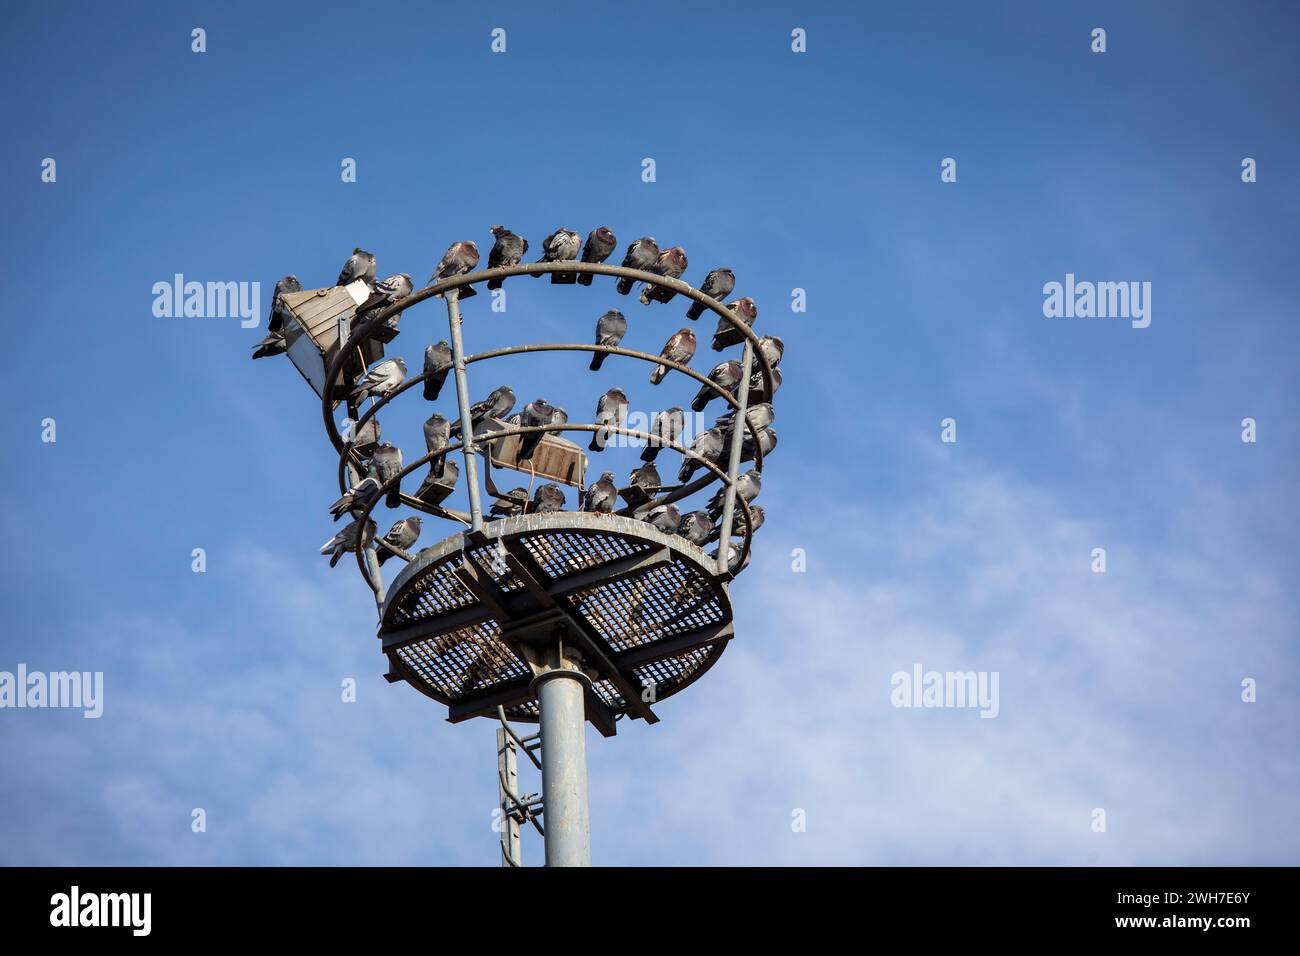 Tauben sitzen auf einem alten Flutlichtmast im Hafen Deutz, Köln. Tauben sitzen auf einem alten Scheinwerfermast im Deutzer Hafen, Köln, Stockfoto